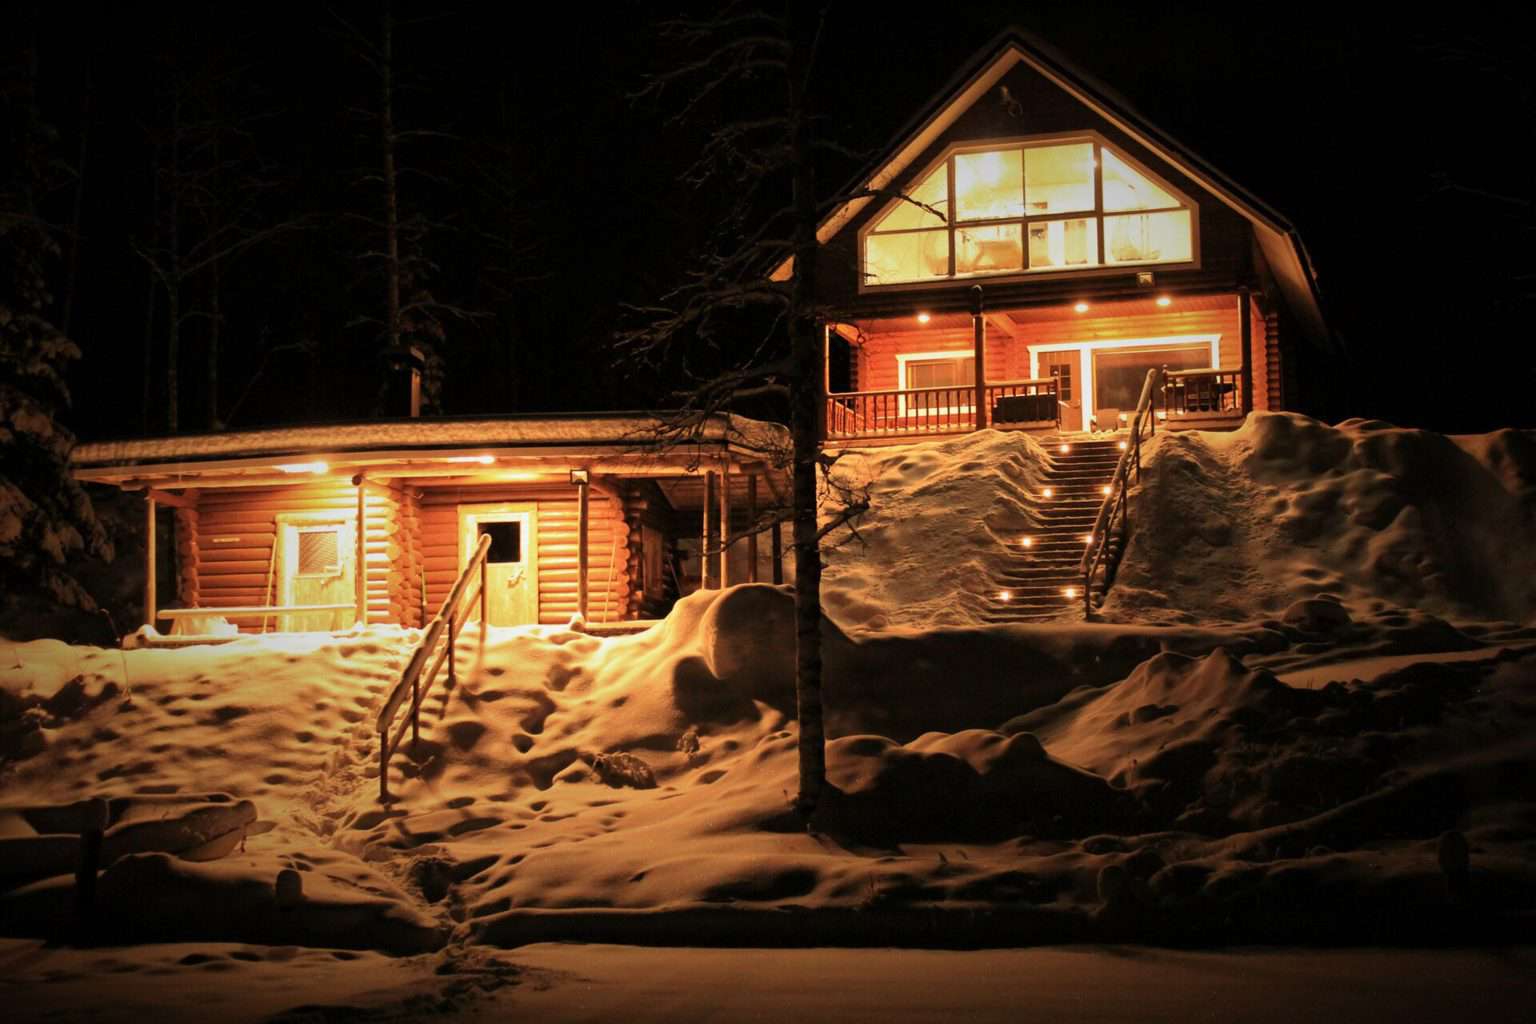 Villa Hiekkaranta at night